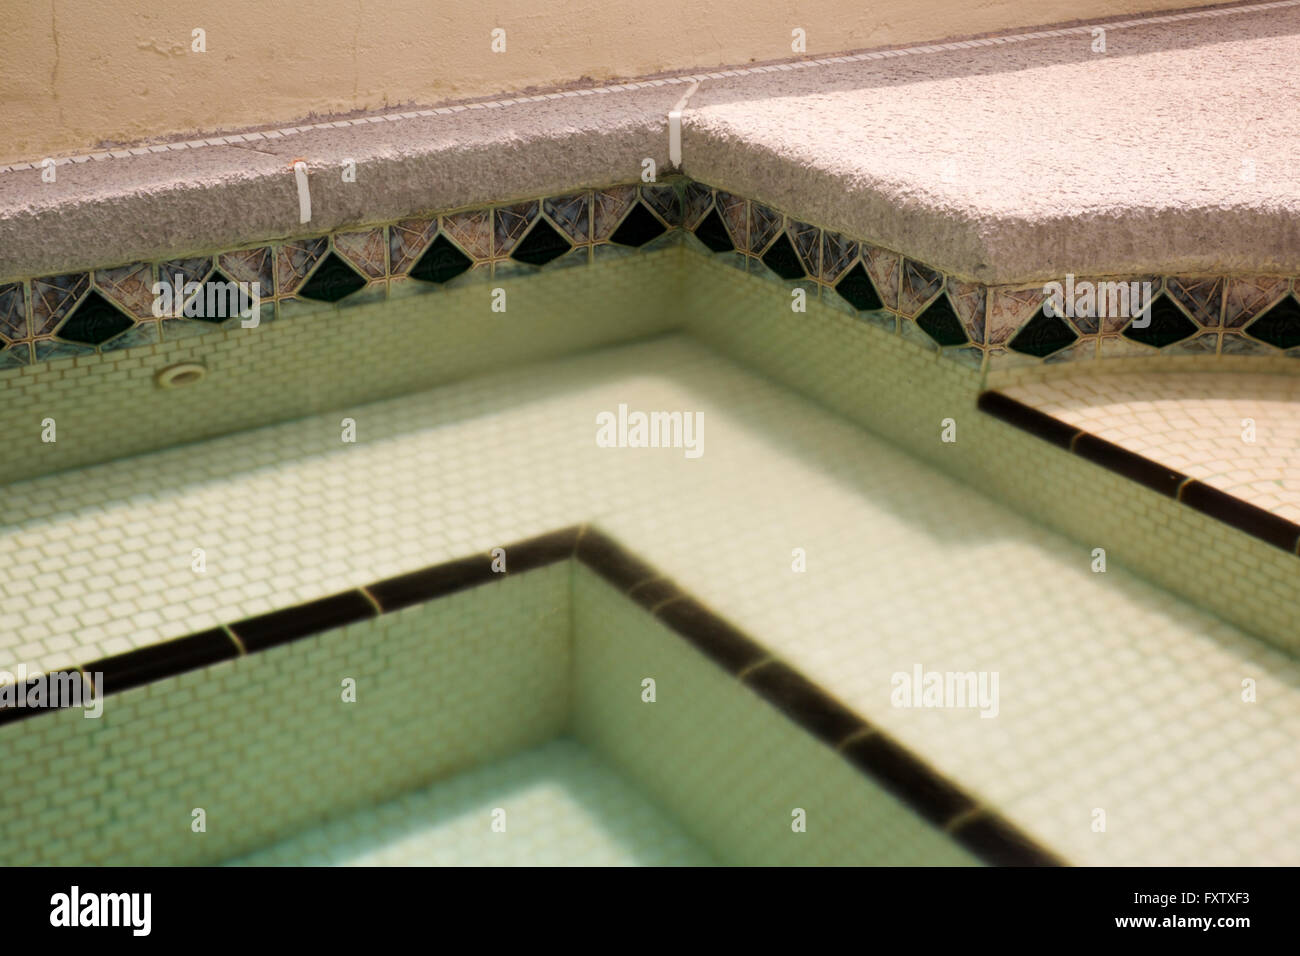 Dettaglio di un angolo in una vasca calda ad un RV Resort nel sud del Texas, Stati Uniti d'America Foto Stock